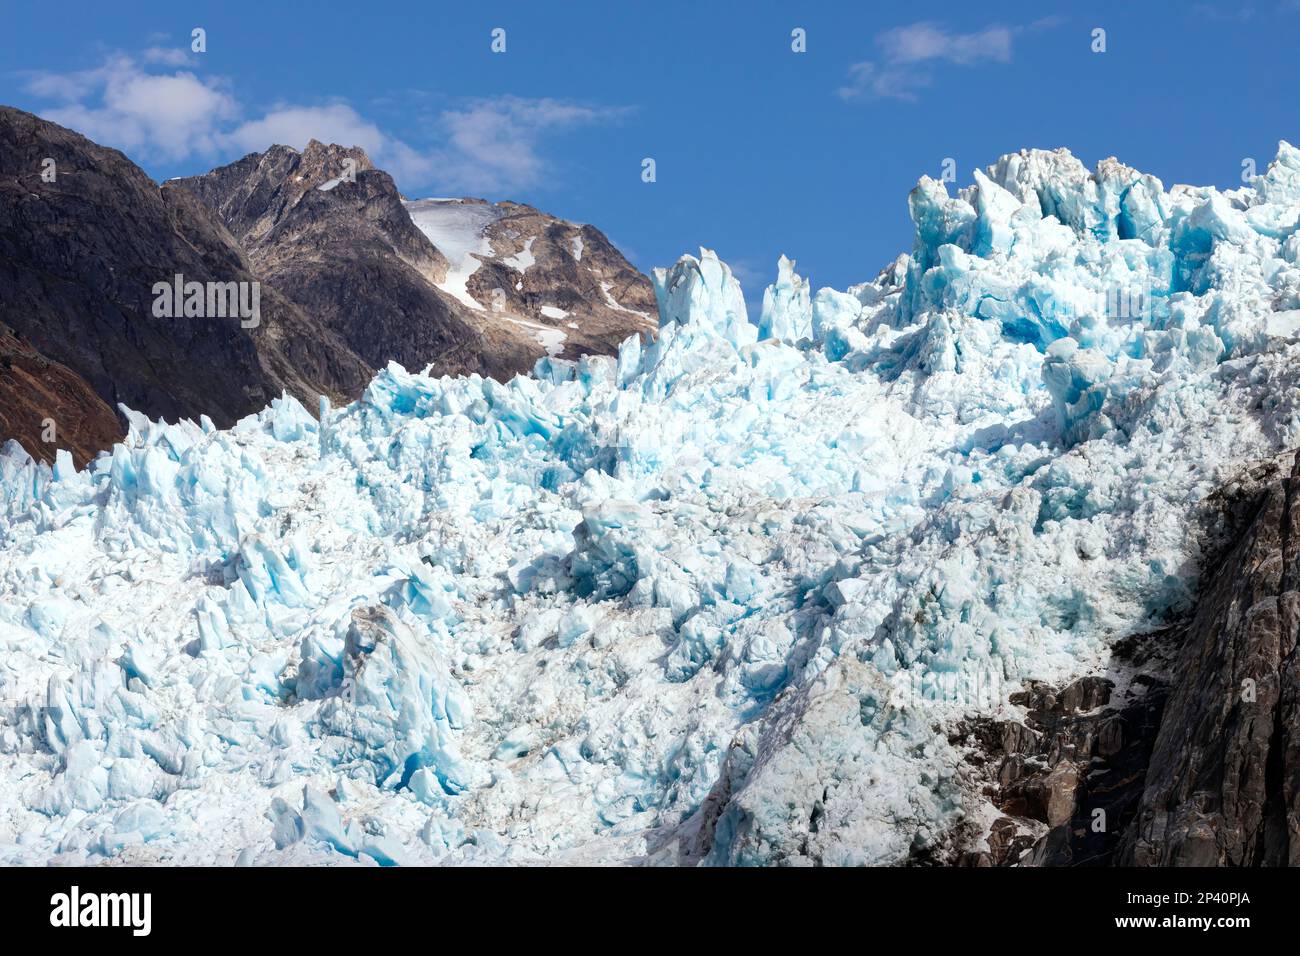 Détail du glacier South Sawyer dans la région sauvage de Tracy Arm-Fords Terror, dans le sud-est de l'Alaska, aux États-Unis. Banque D'Images